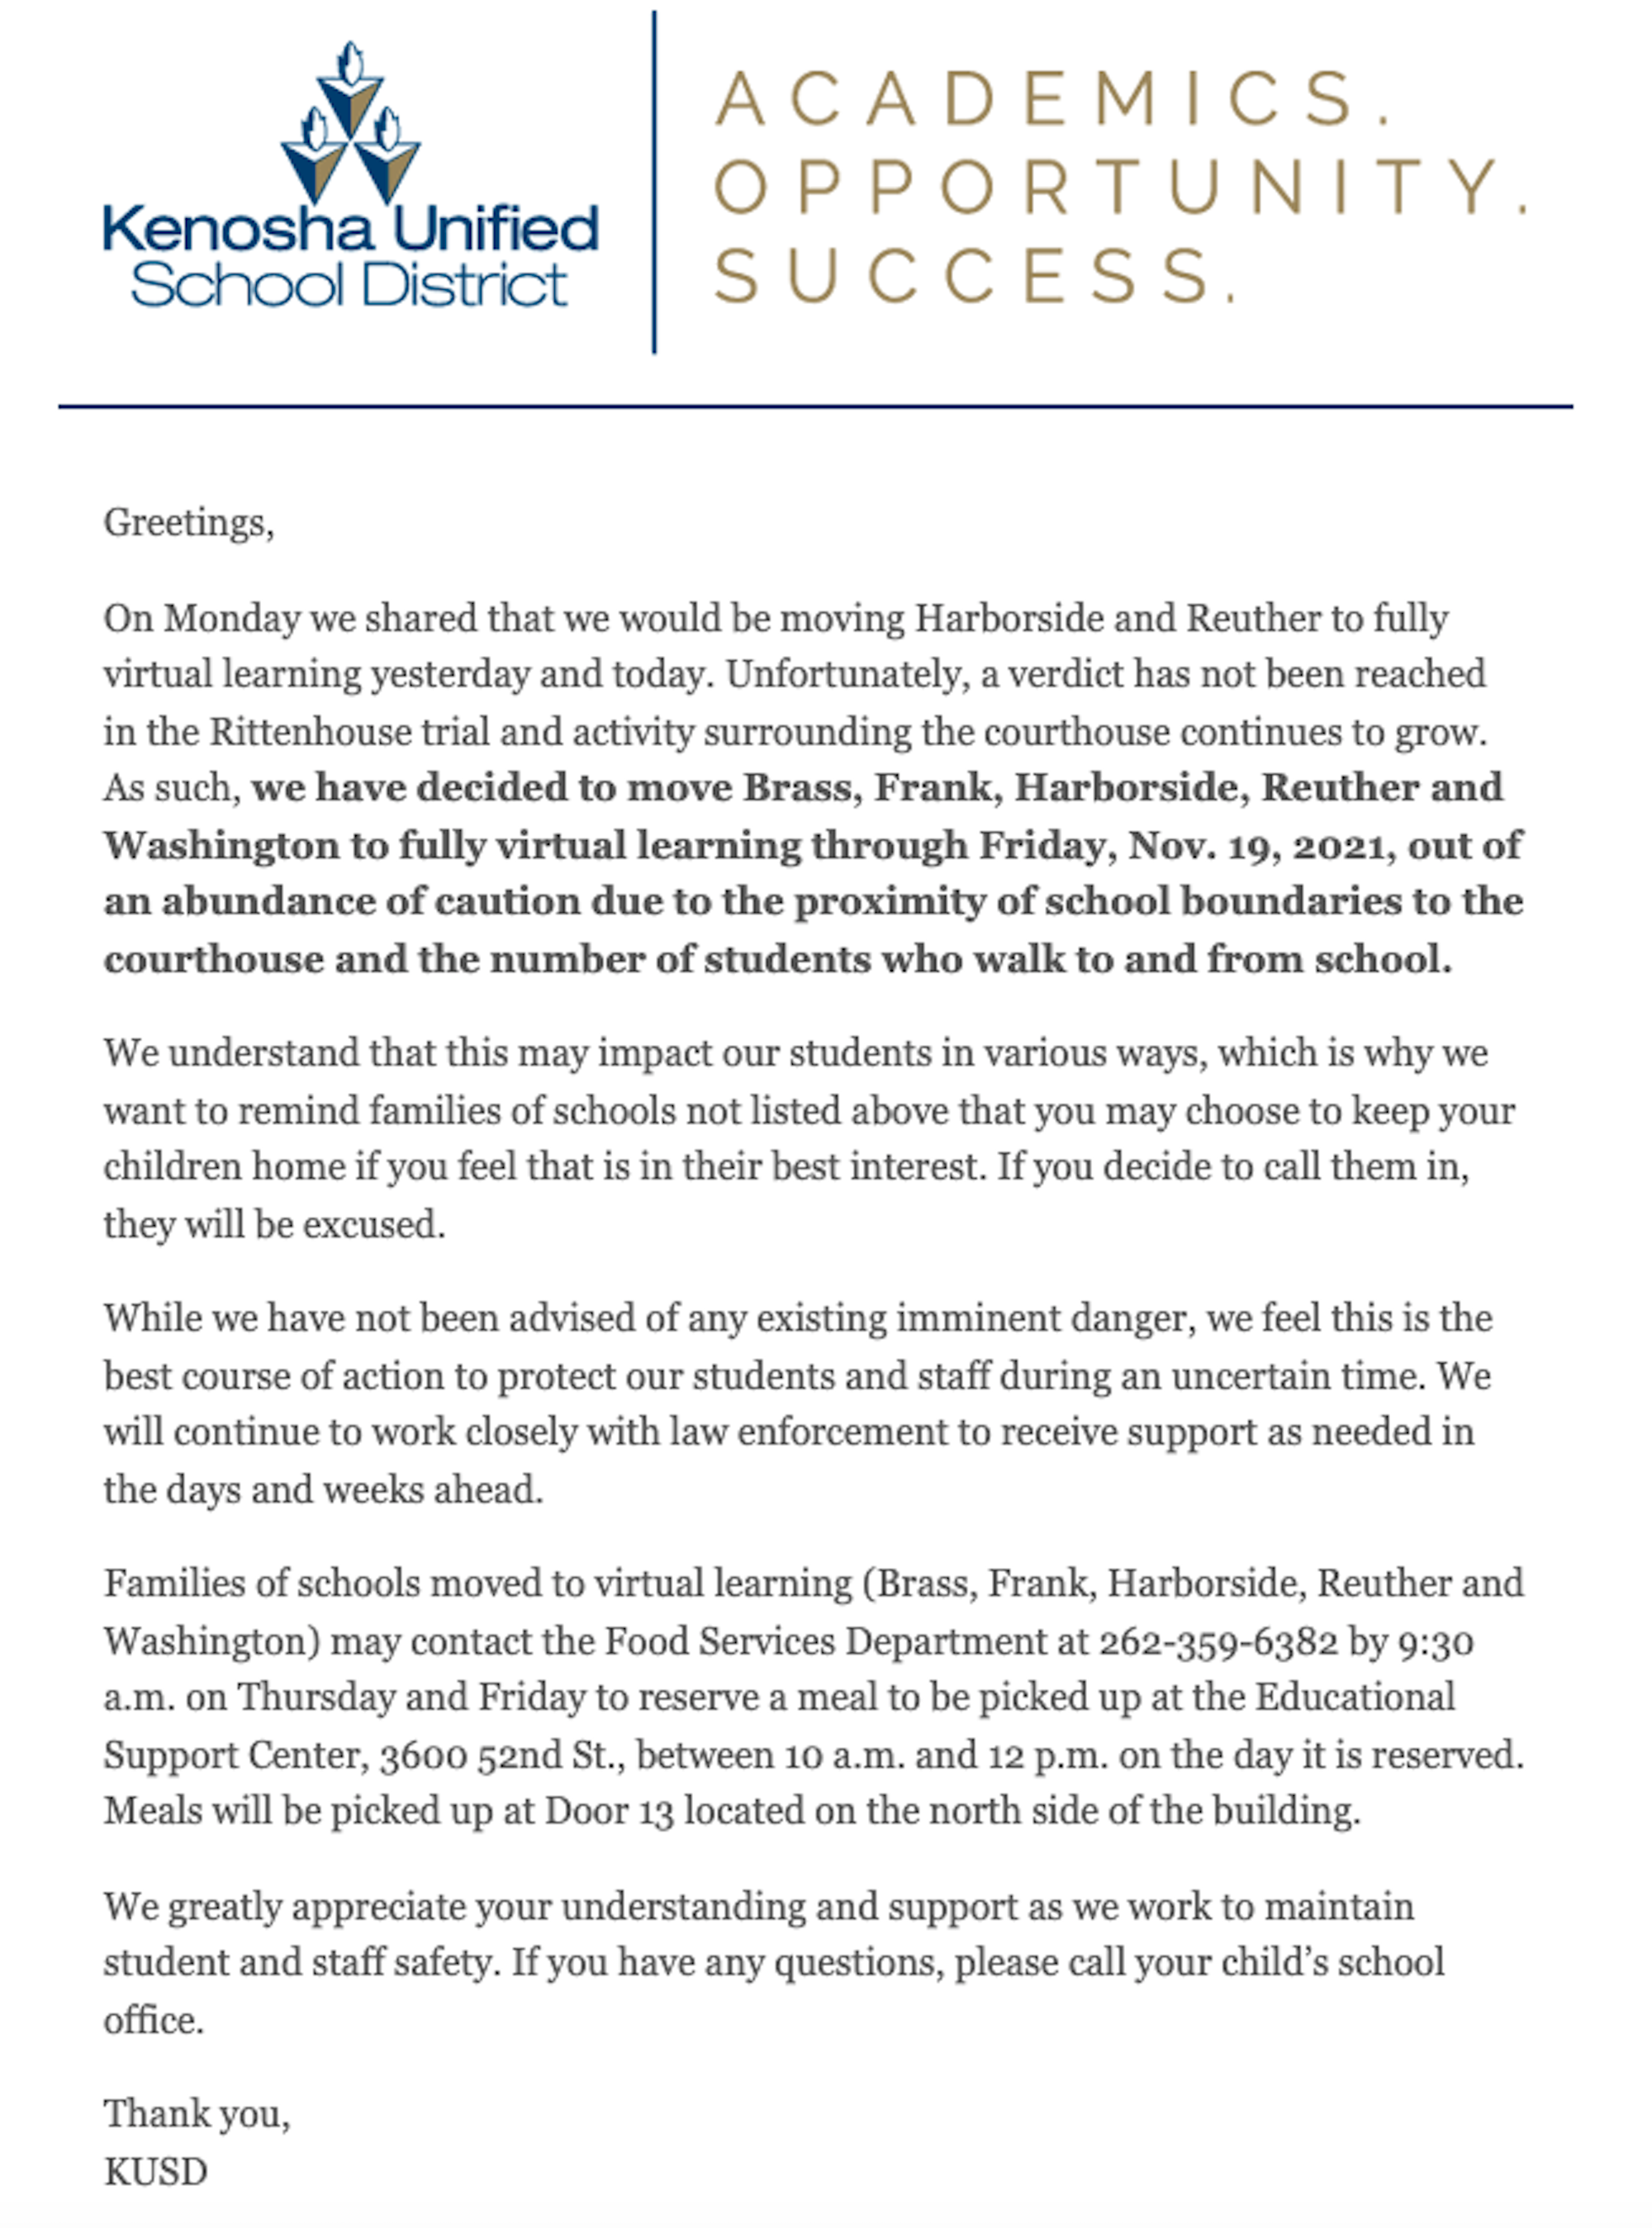 Kenosha Unified School District letter